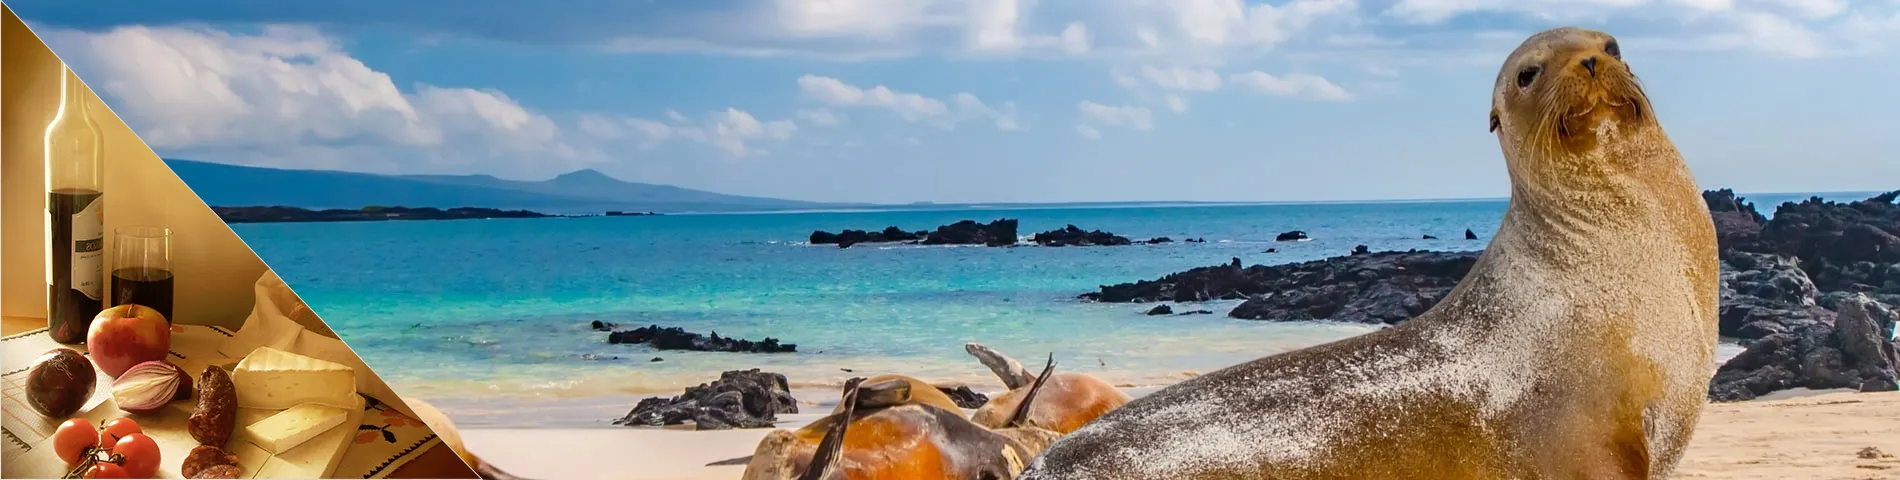 Islas Galapagos - İspanyolca & Kültür